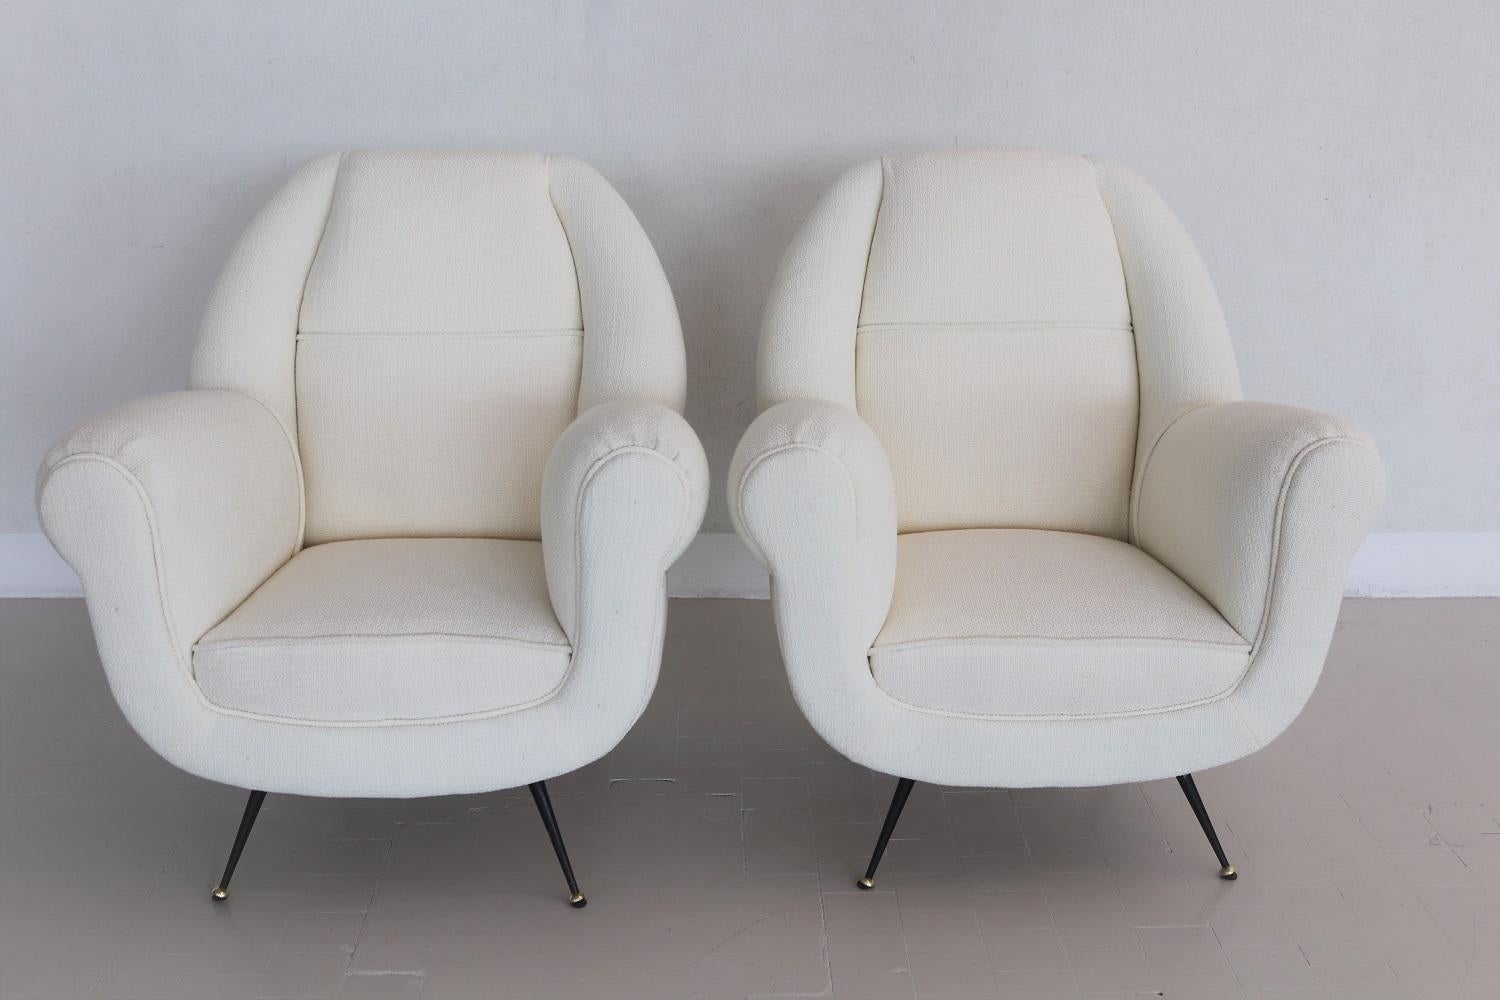 Magnifique et élégante paire de deux fauteuils ou chaises longues italiens originaux du milieu du siècle dernier, datant des années 1960, avec pieds stiletto en laiton.
Attribué à Design de Gigi Radice.
Entièrement restauré à l'intérieur avec des